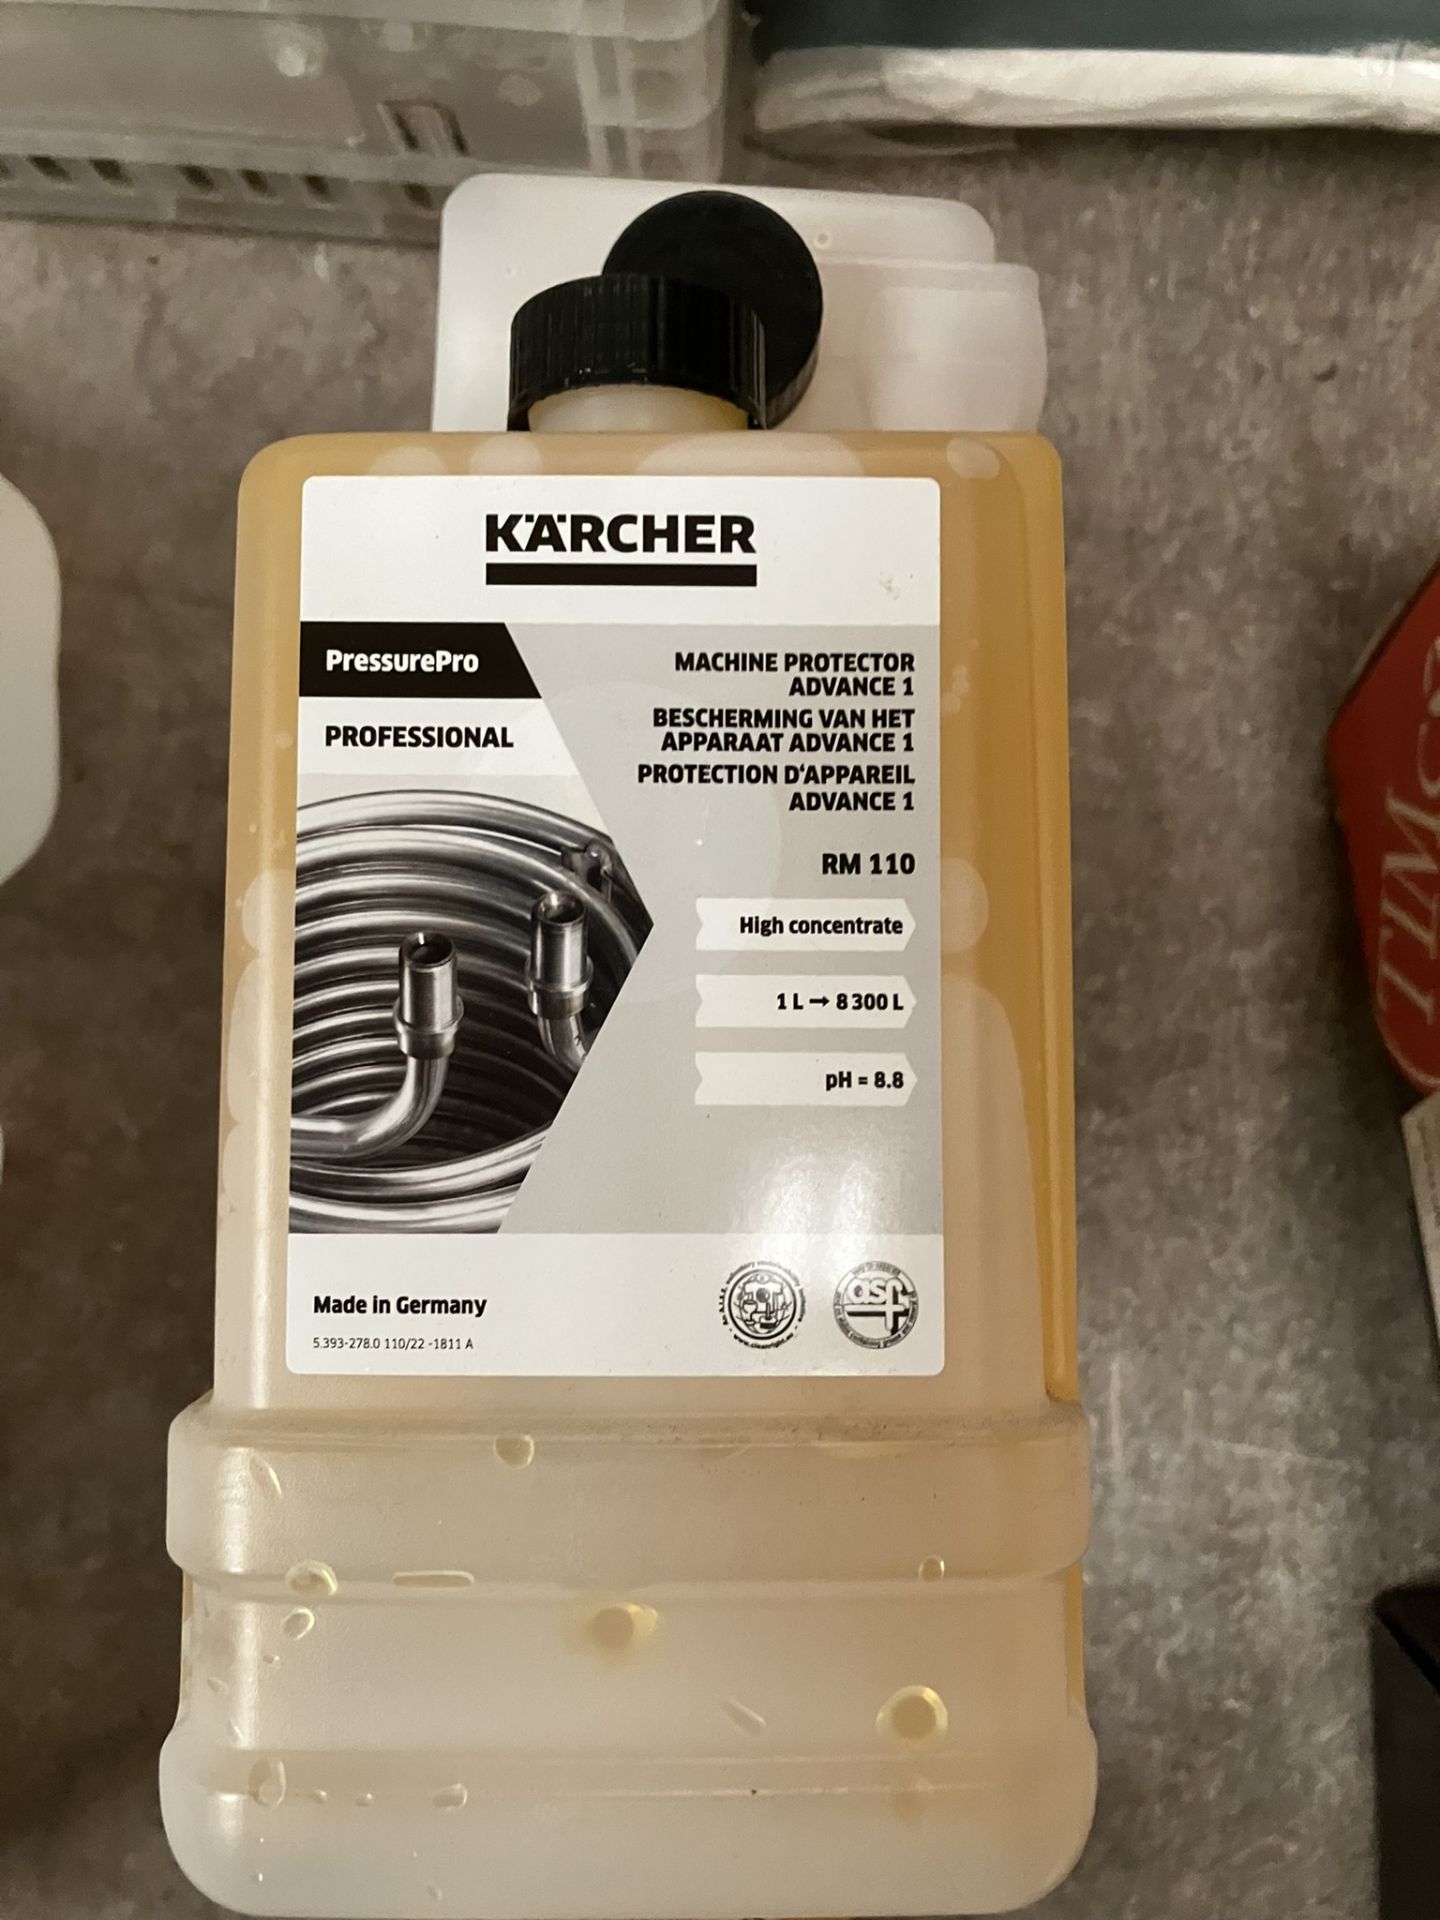 Five bottles Karcher machine protector (1 ltr bottles) - Image 2 of 2